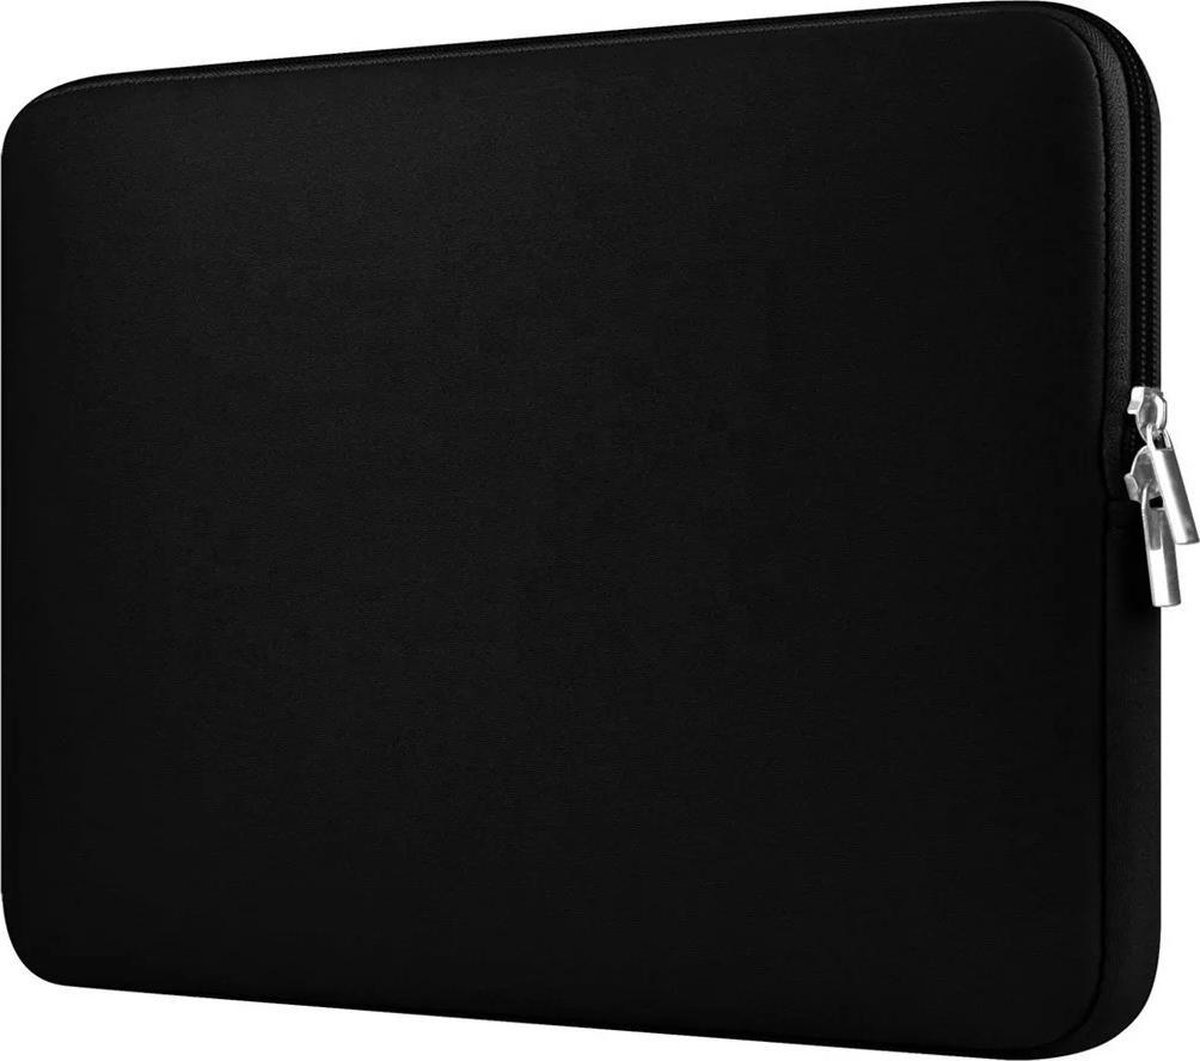 Laptopcase – sleeve – spatwaterdicht – 15,6 inch – laptoptas – kleur zwart - Soft Touch